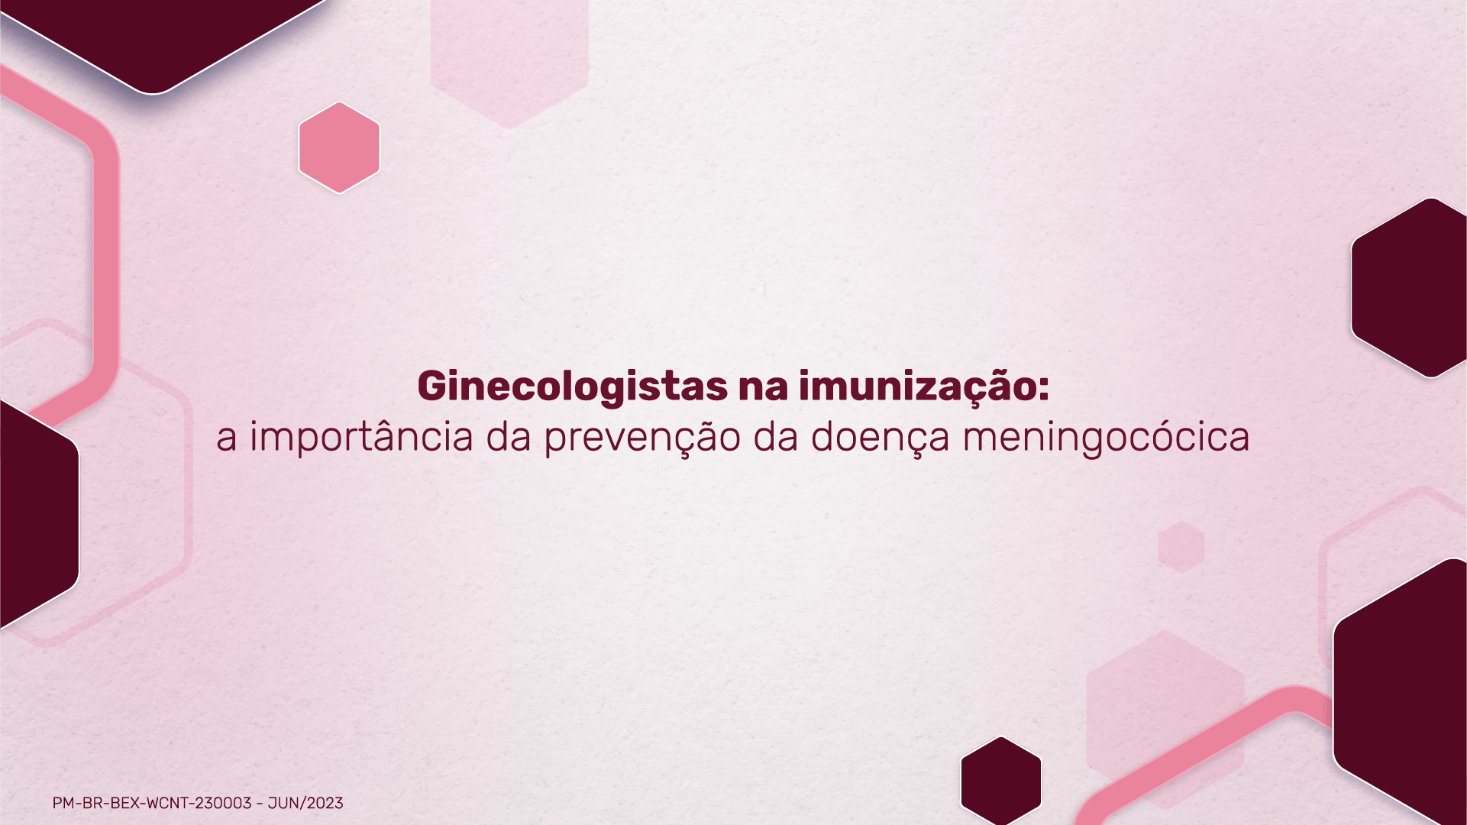 Ginecologistas na imunização: a importância da prevenção da doença meningocócica